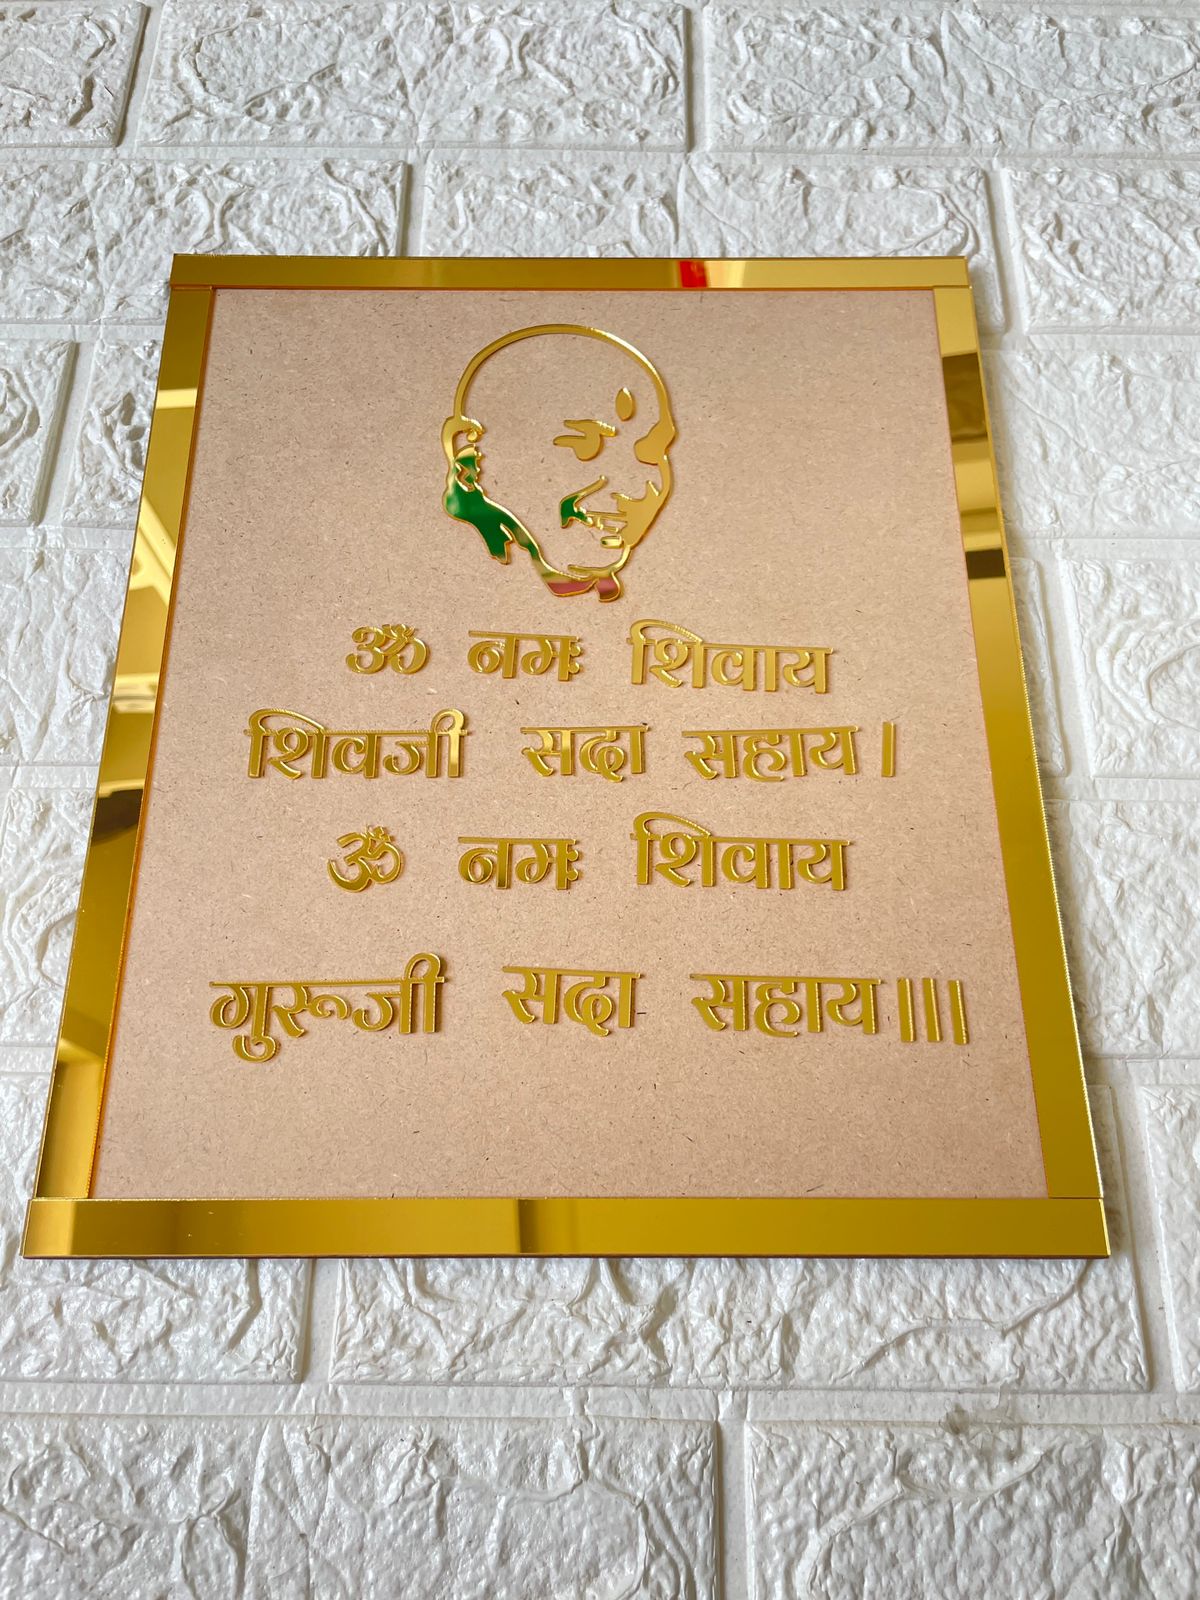 Guruji mantra frame set